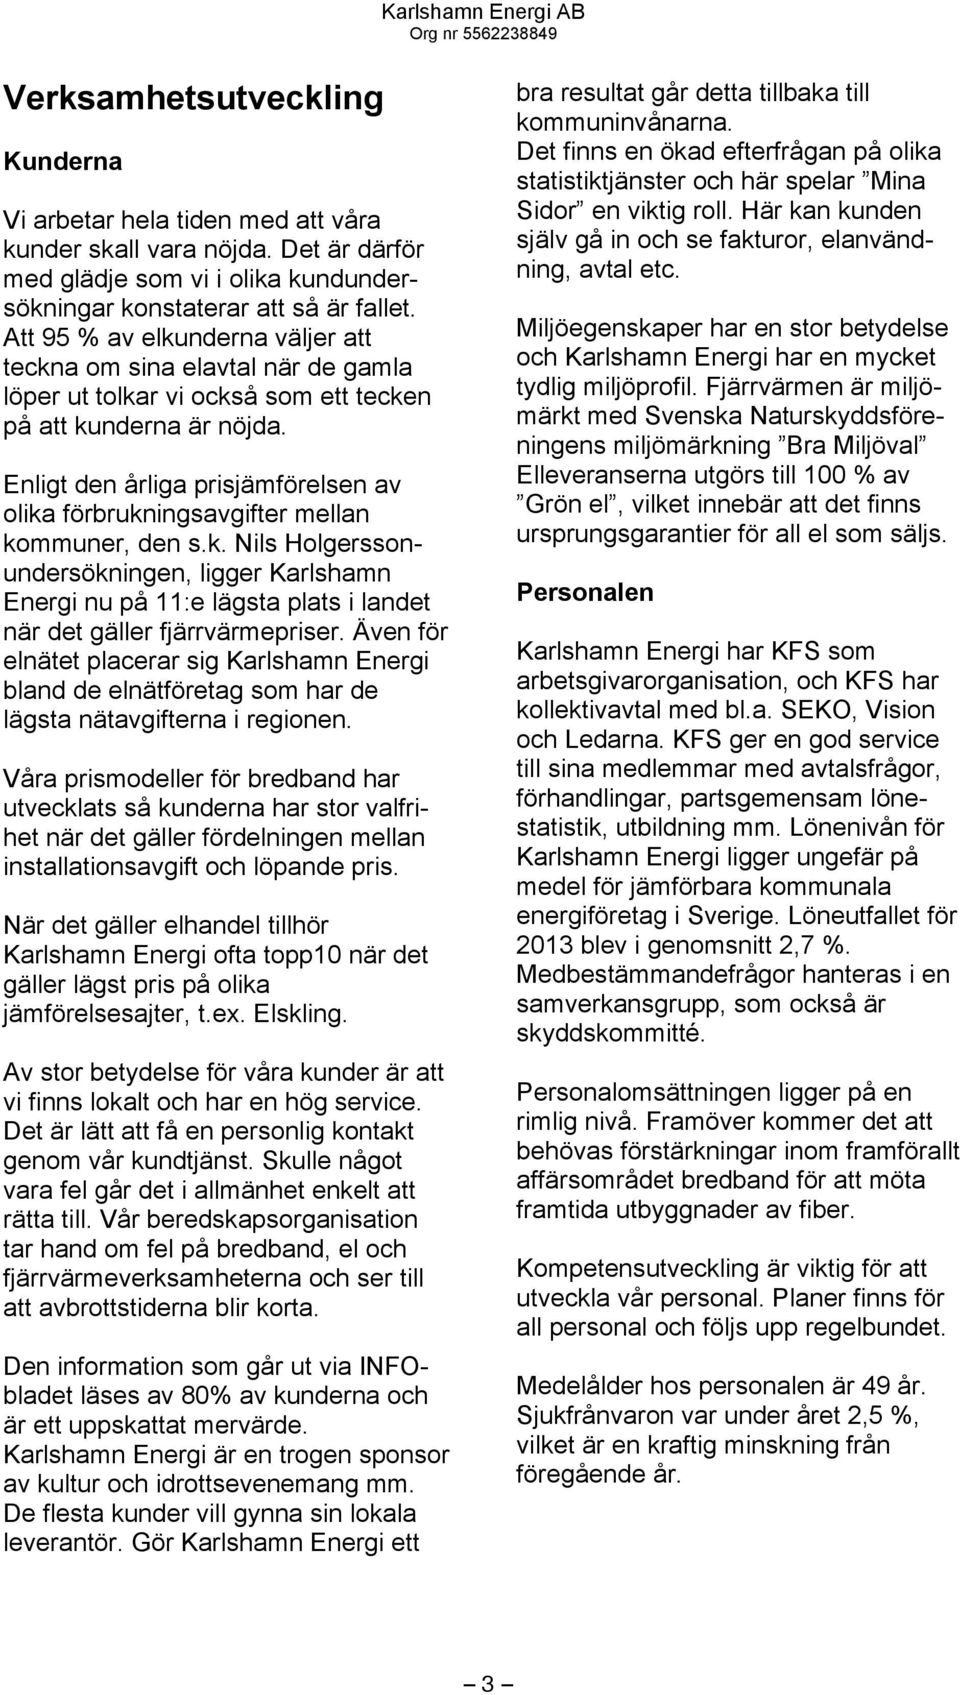 Enligt den årliga prisjämförelsen av olika förbrukningsavgifter mellan kommuner, den s.k. Nils Holgerssonundersökningen, ligger Karlshamn Energi nu på 11:e lägsta plats i landet när det gäller fjärrvärmepriser.